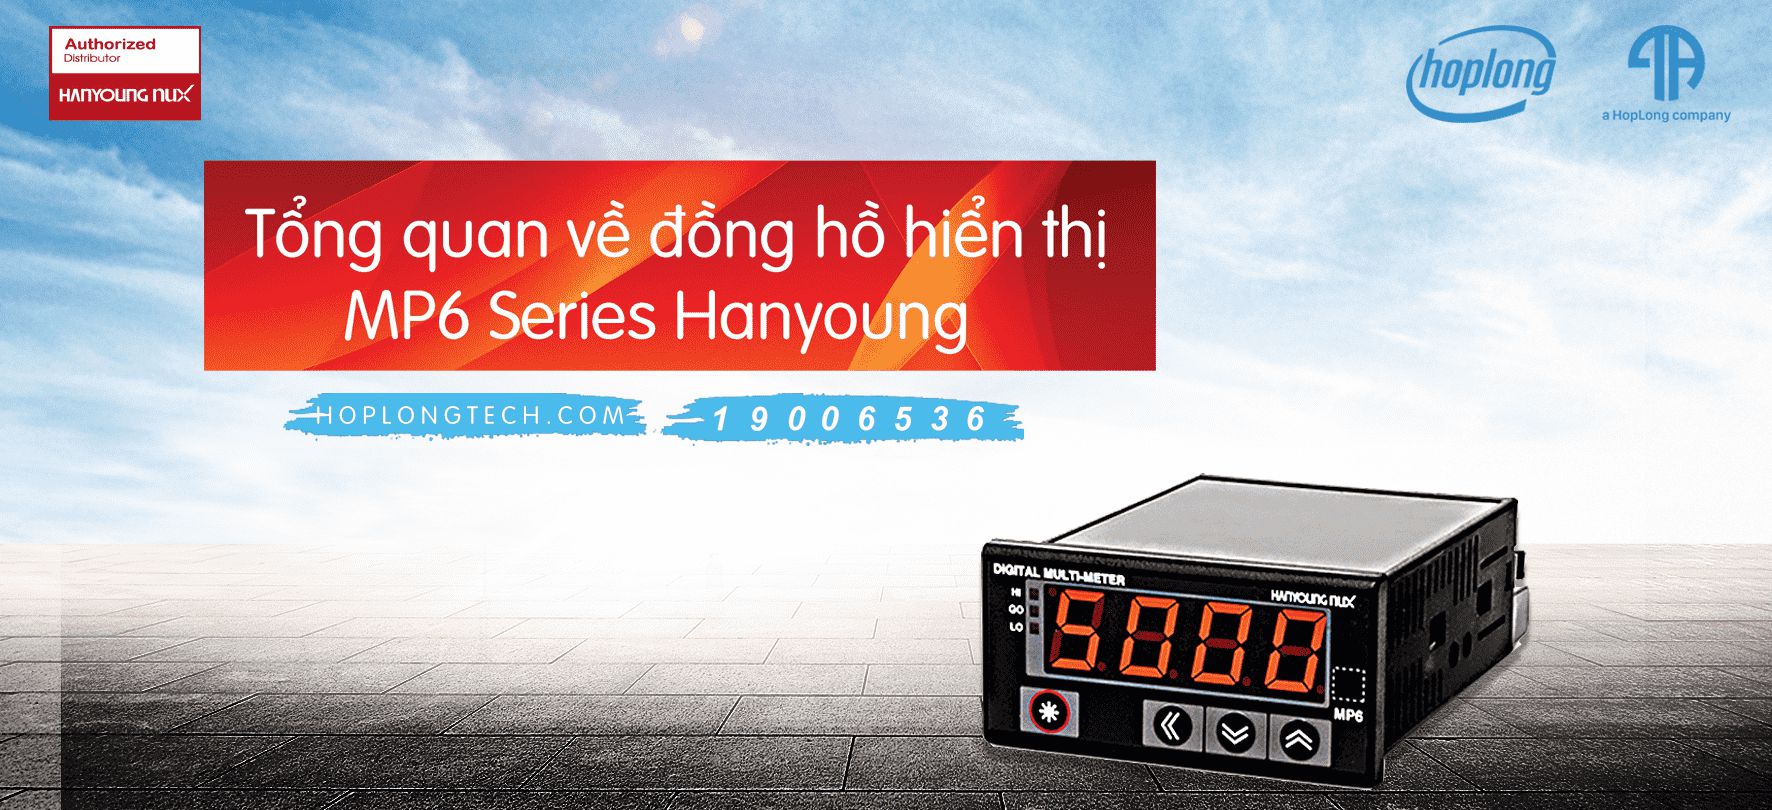 Tổng quan về đồng hồ hiển thị MP6 Series Hanyoung